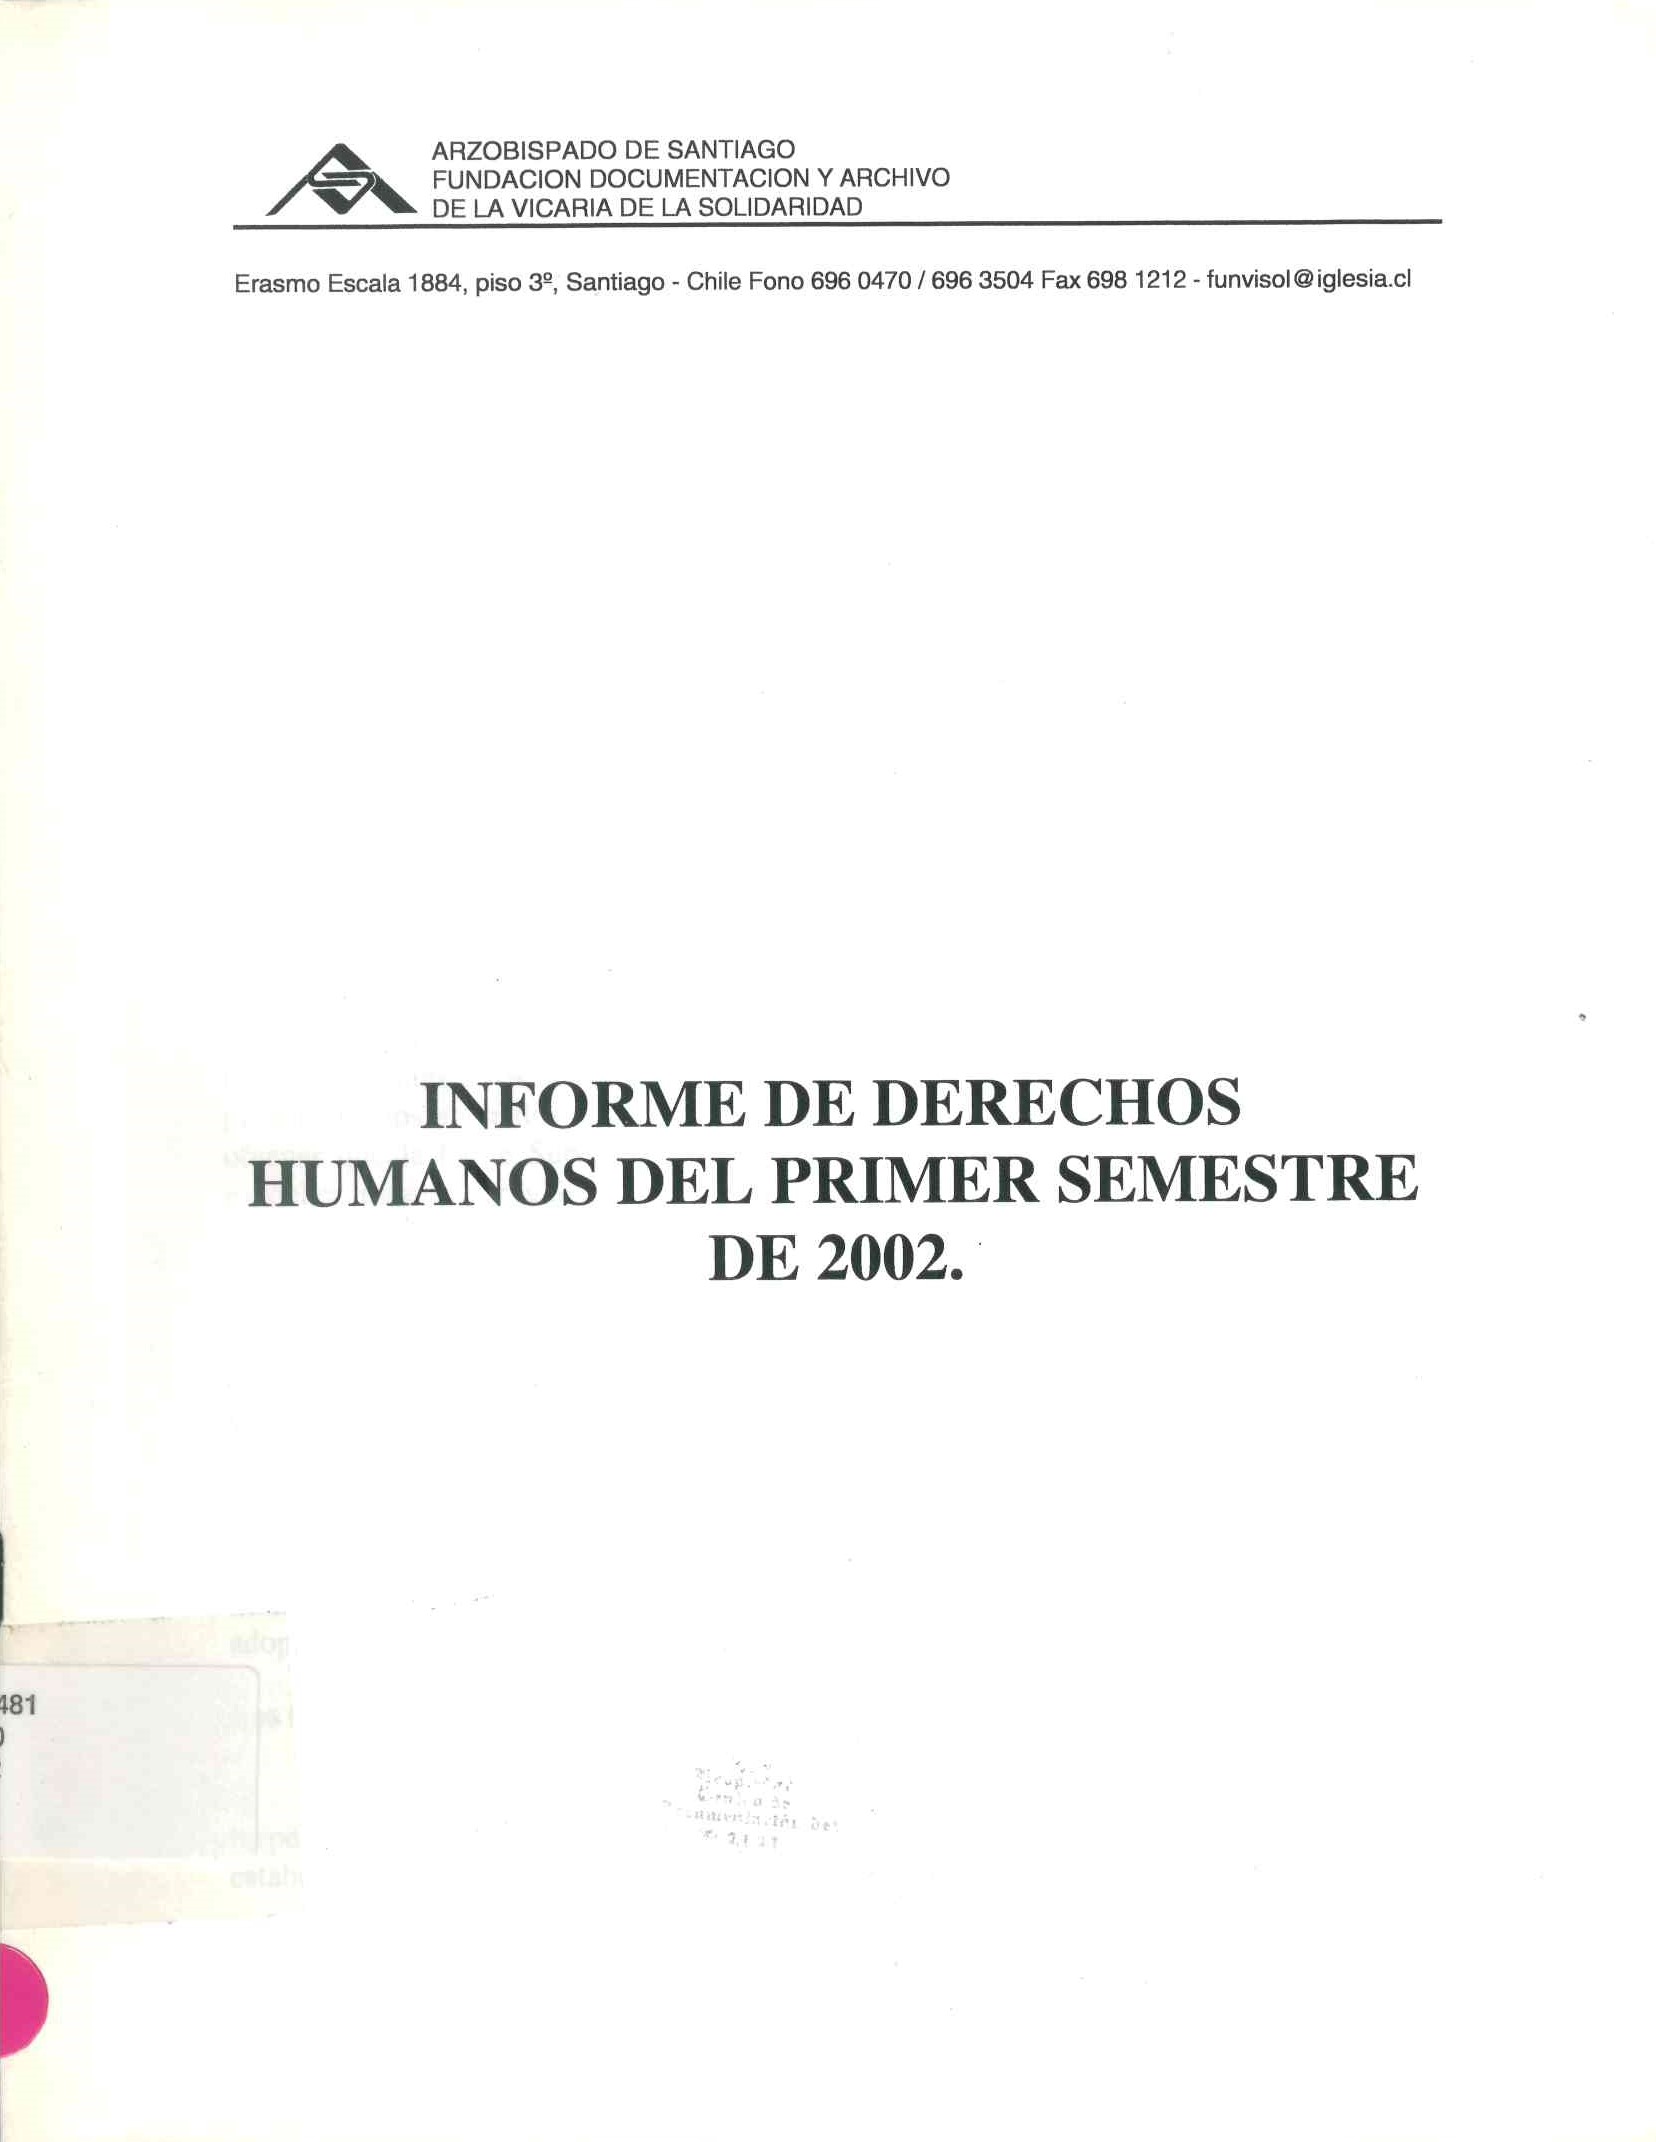 Informe de derechos humanos del primer semestre 2002